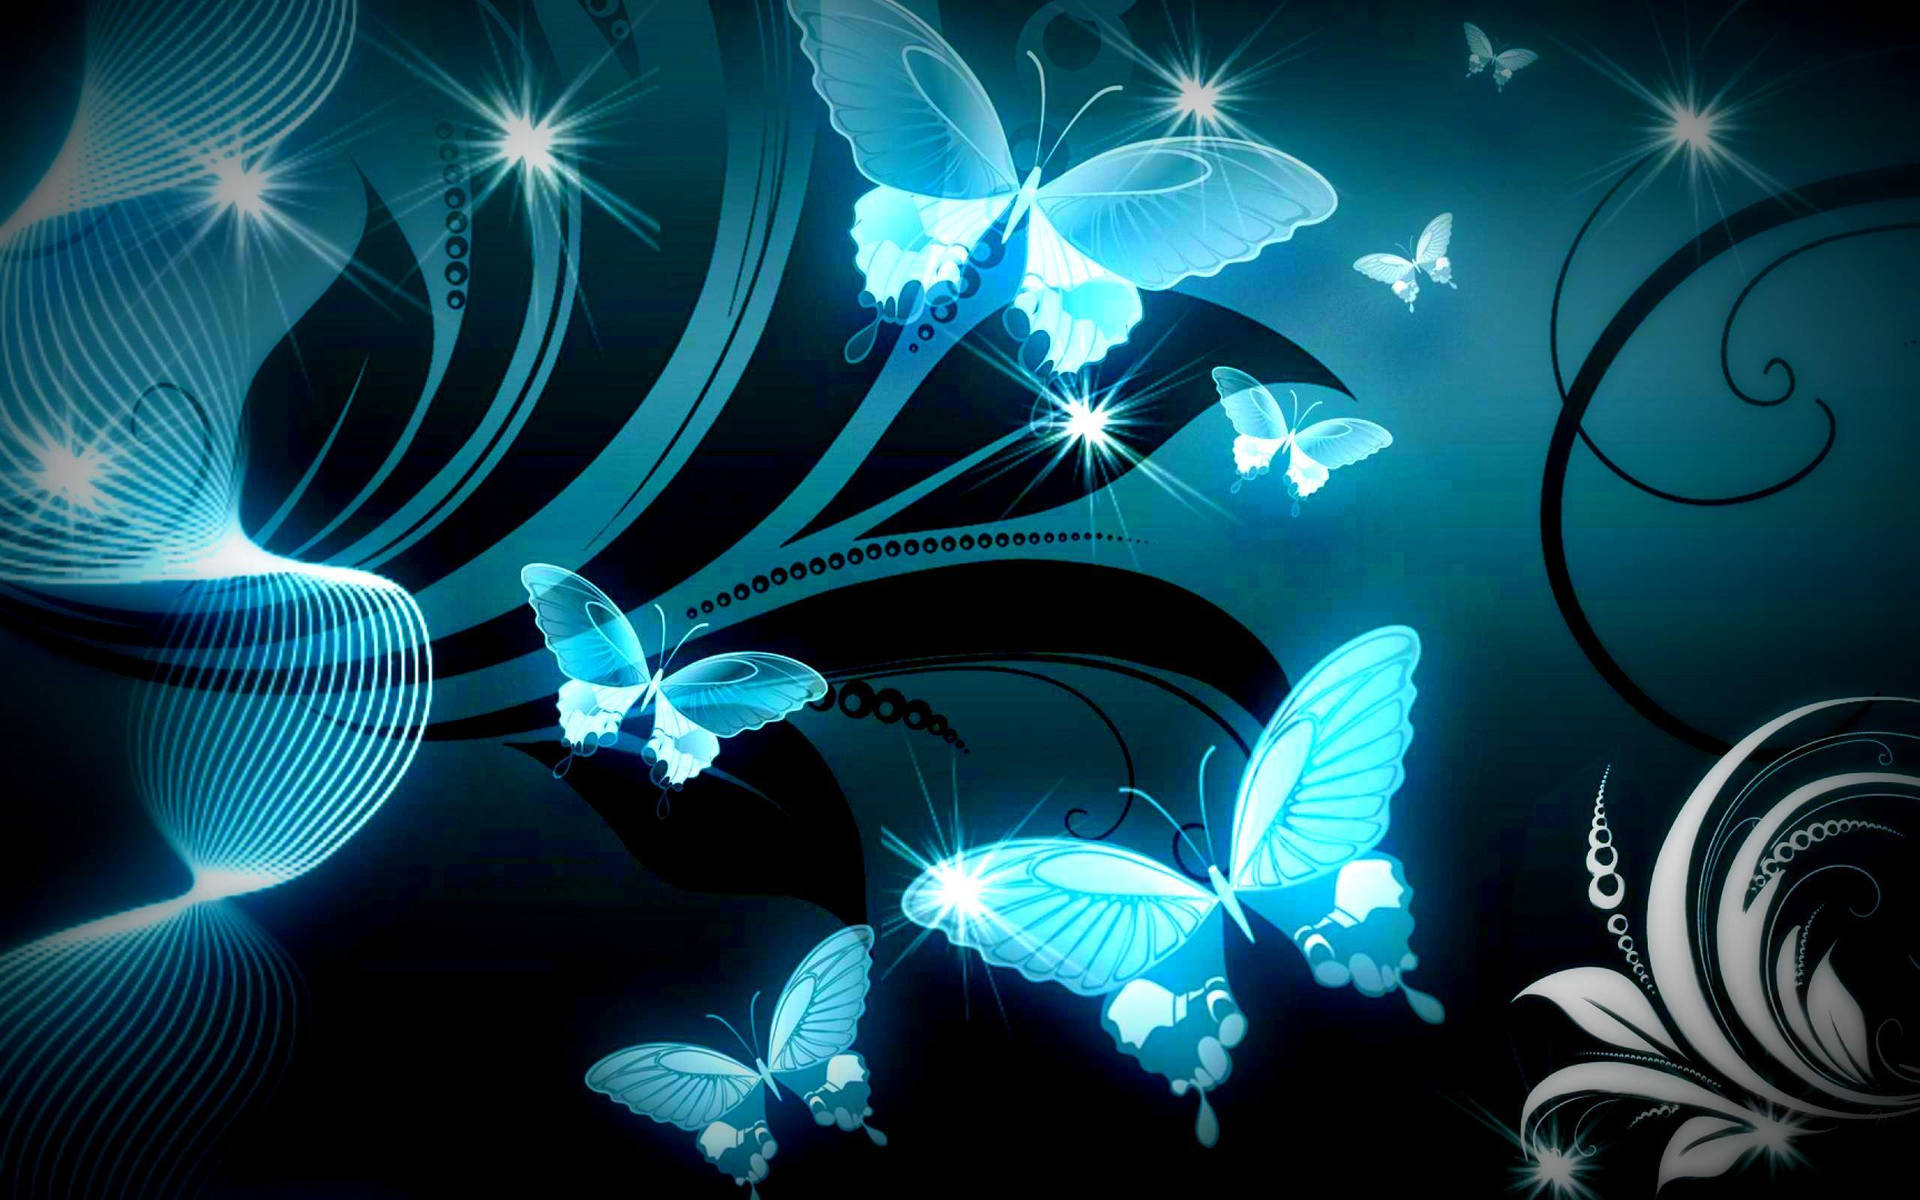 neon blue butterflies